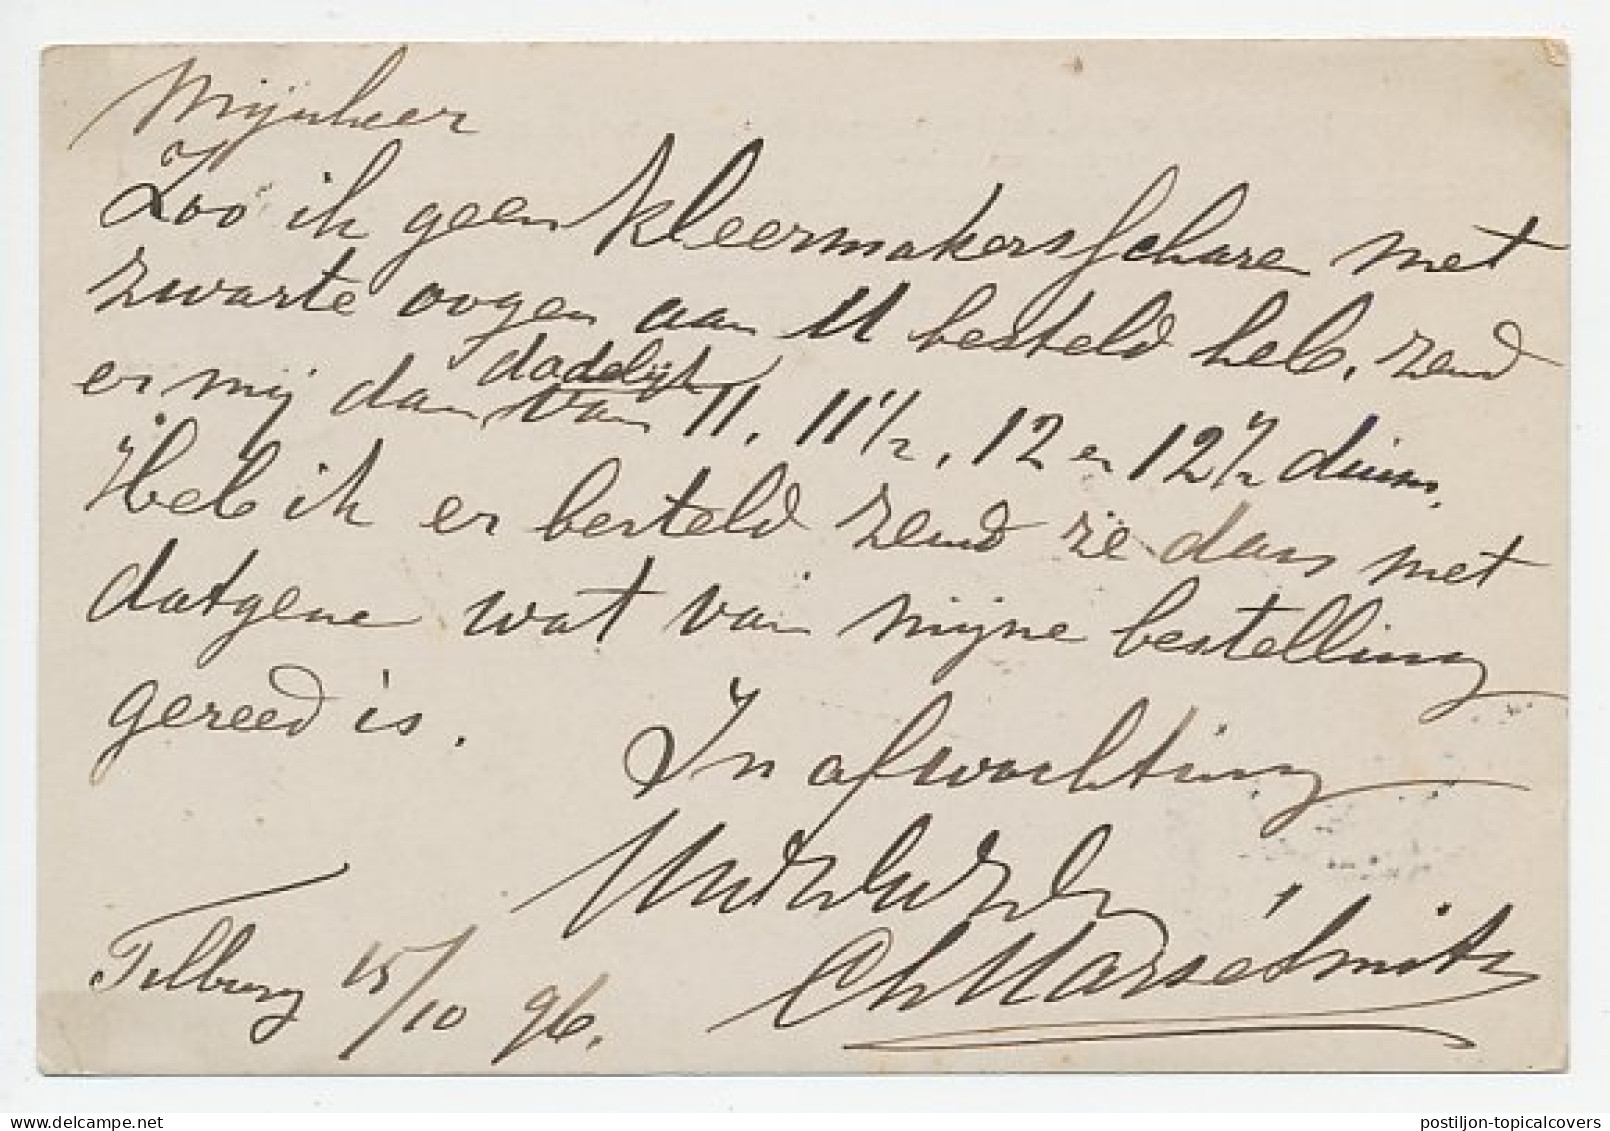 Firma Briefkaart Tilburg 1896 - Gebruiksartikelen - Unclassified